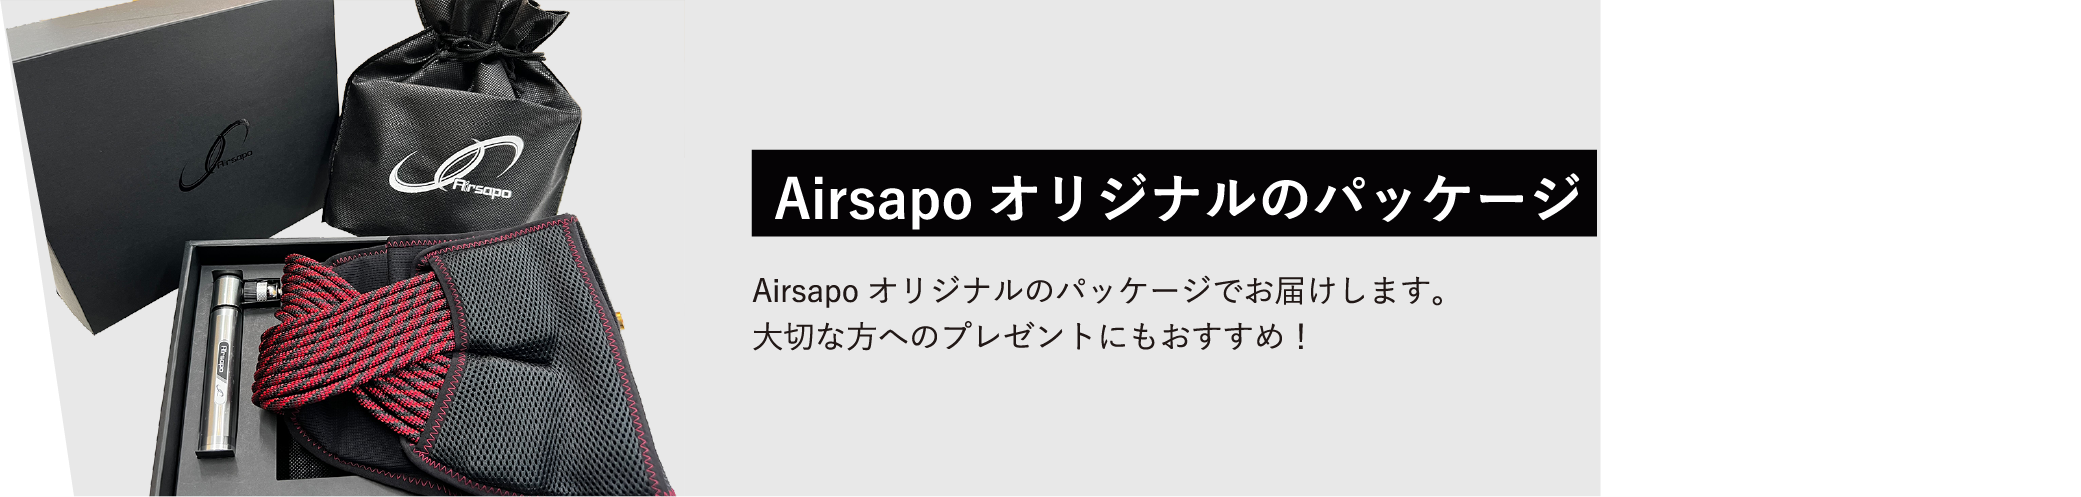 Airsapoオリジナルのパッケージ